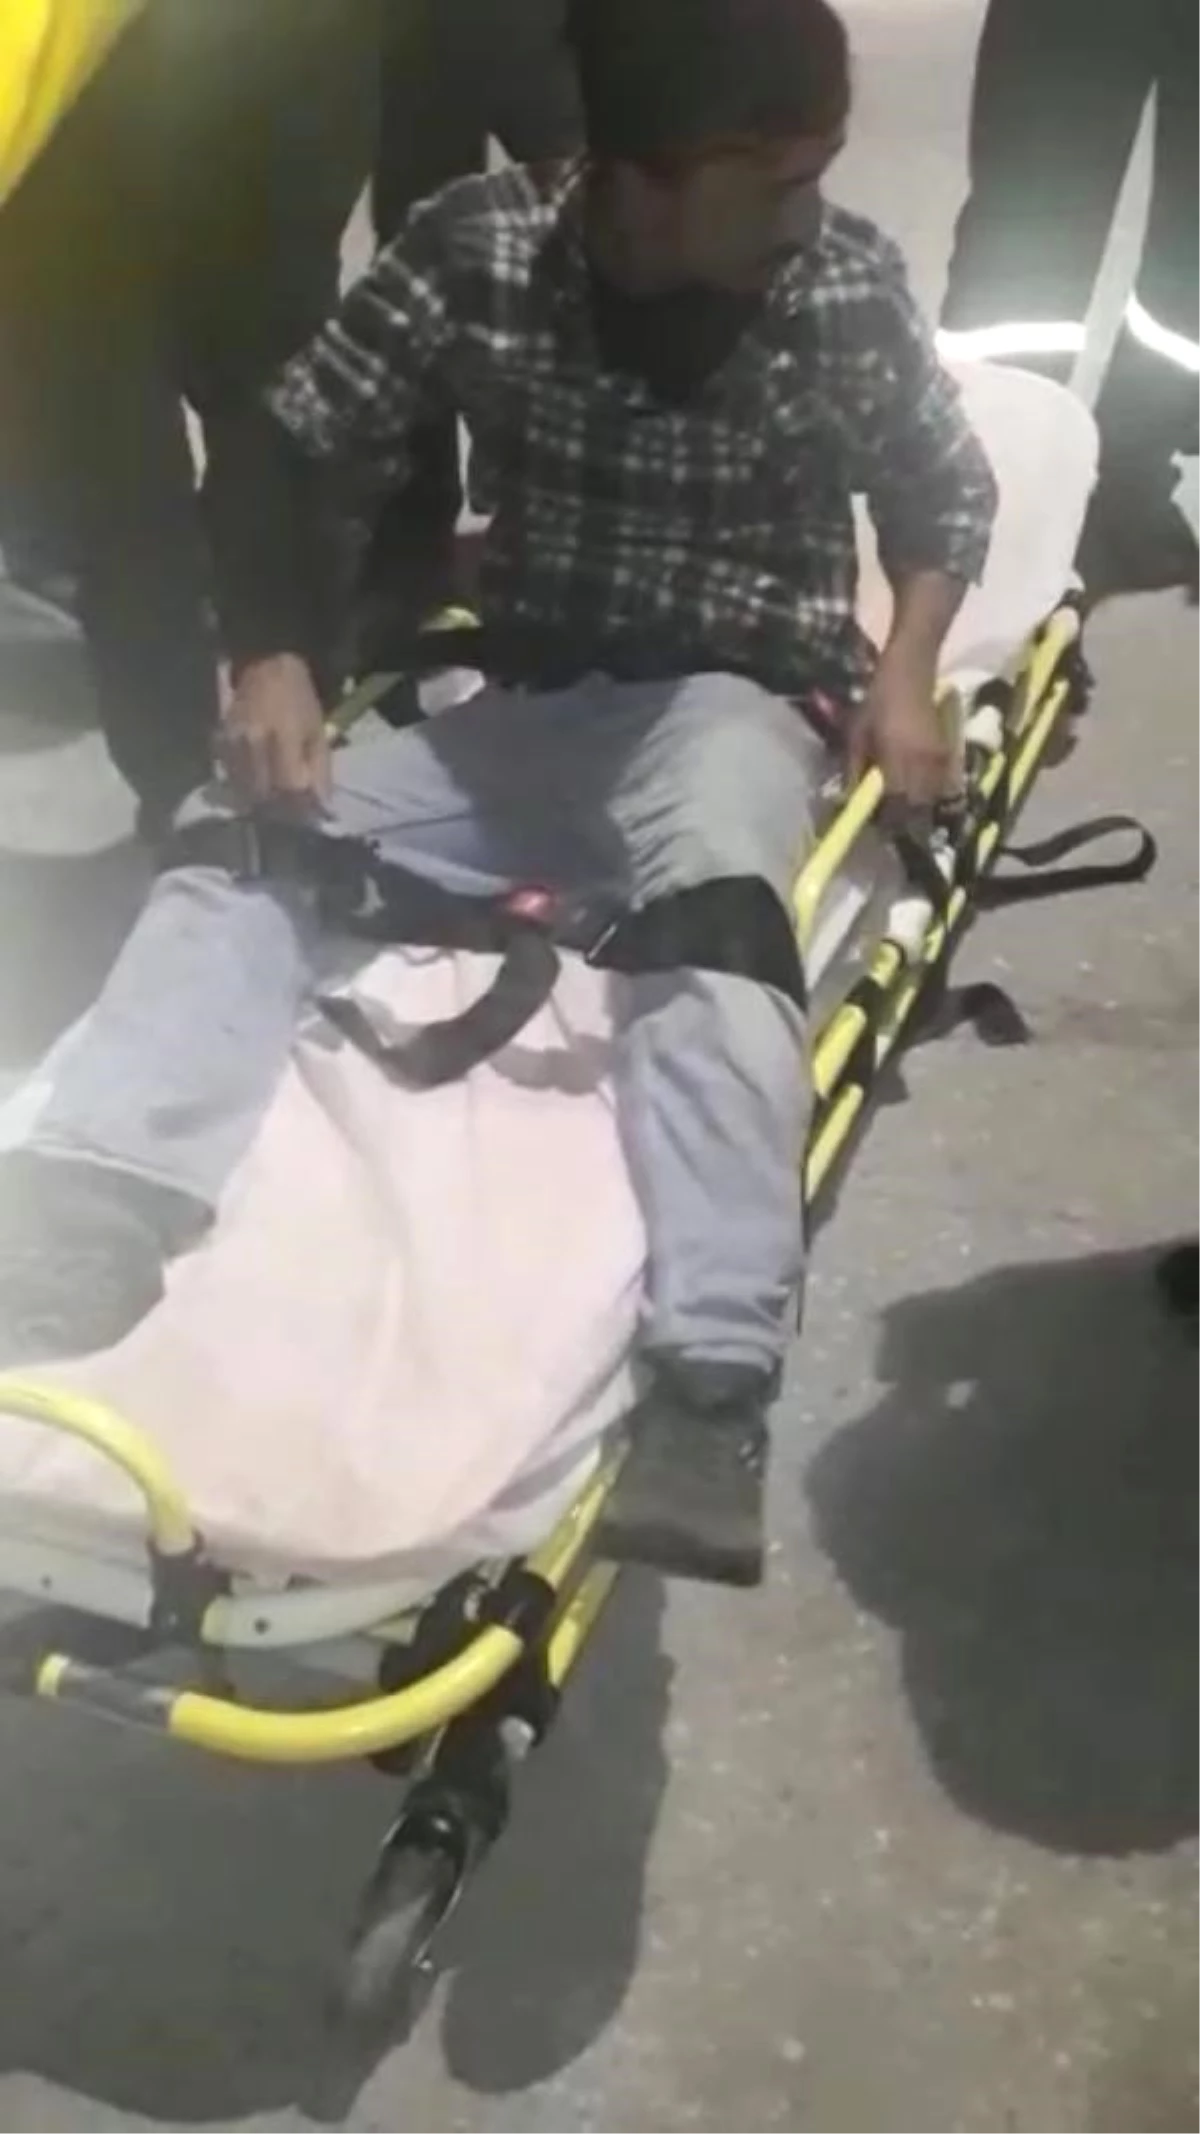 80 Metrelik Kulede Eylem Yapan İki İşçiden Biri Hastaneye Kaldırıldı